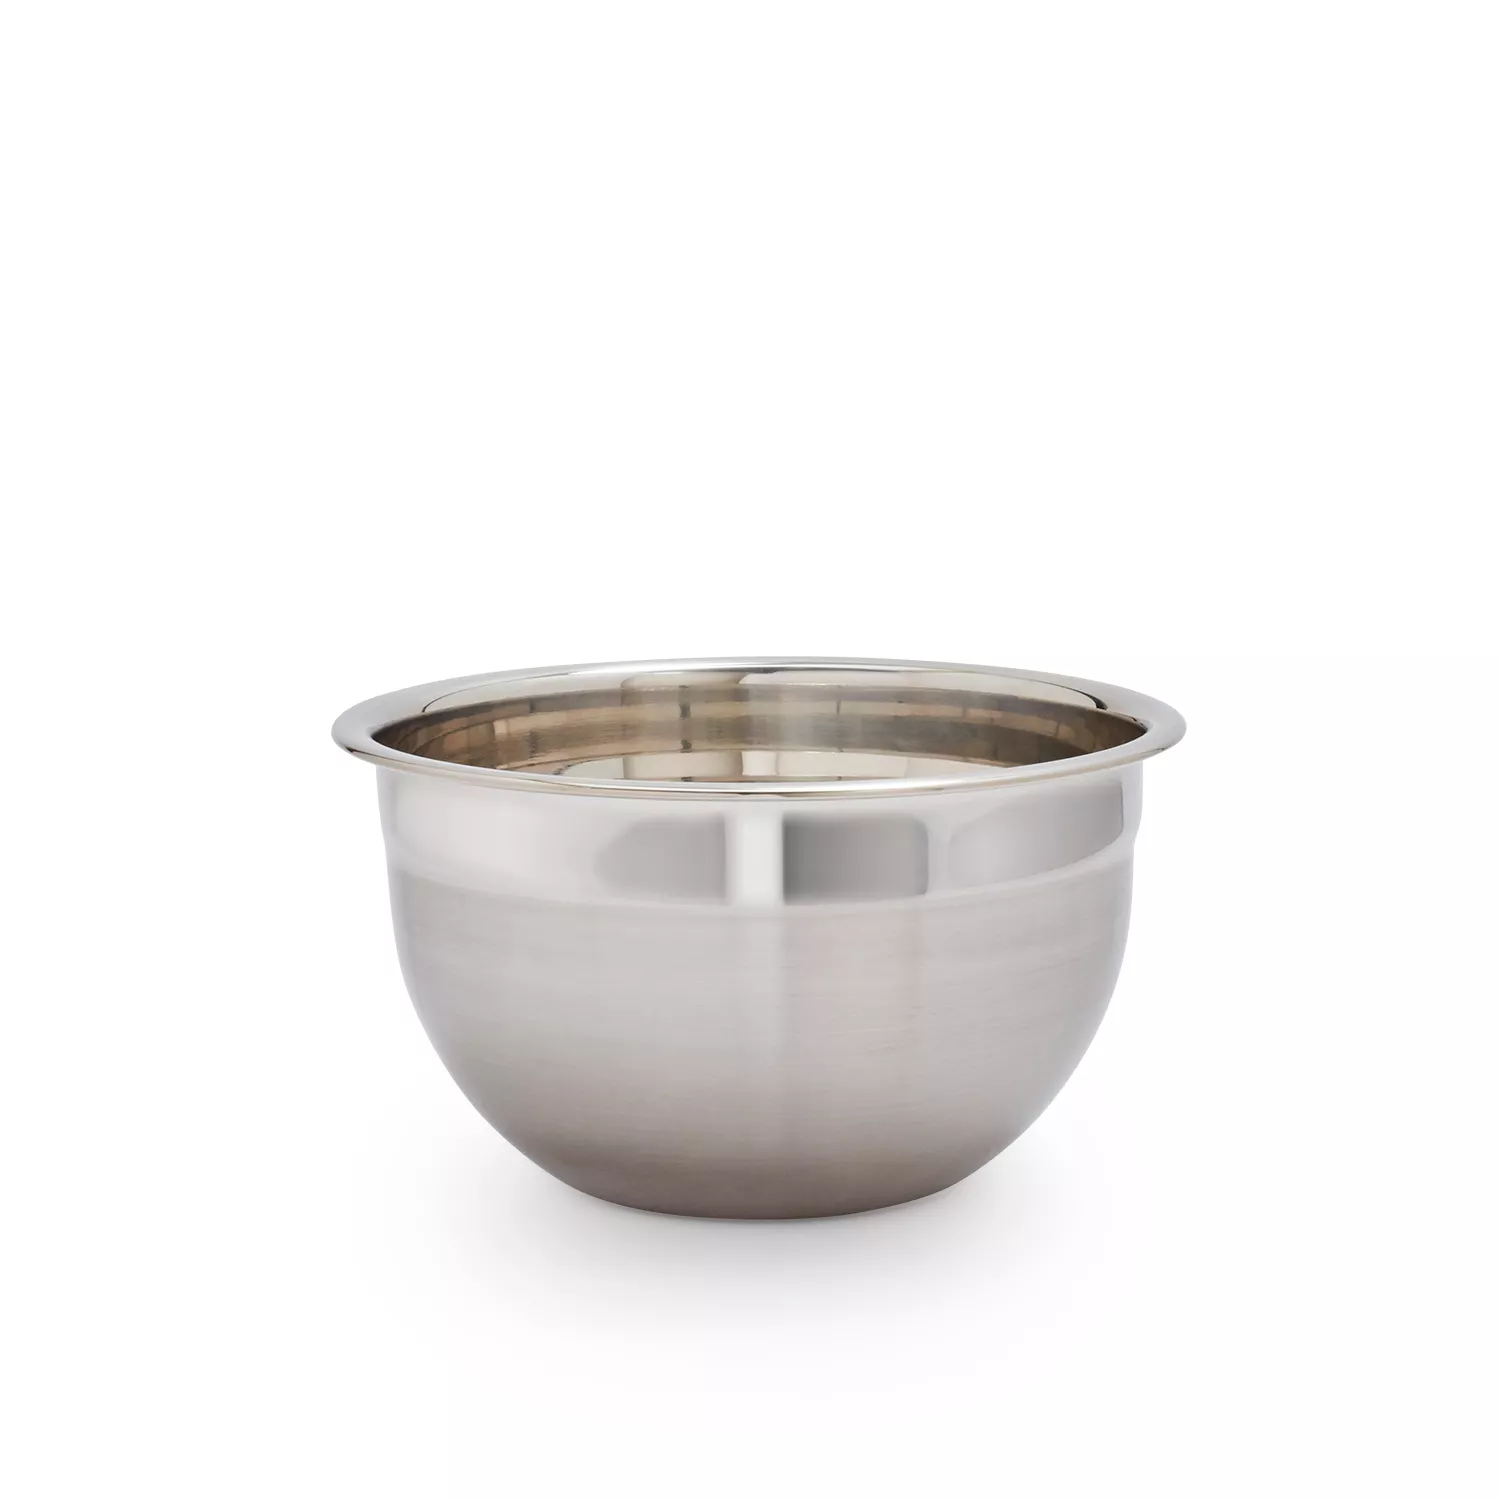 Sur La Table Ceramic Mixing Bowls, Set of 3